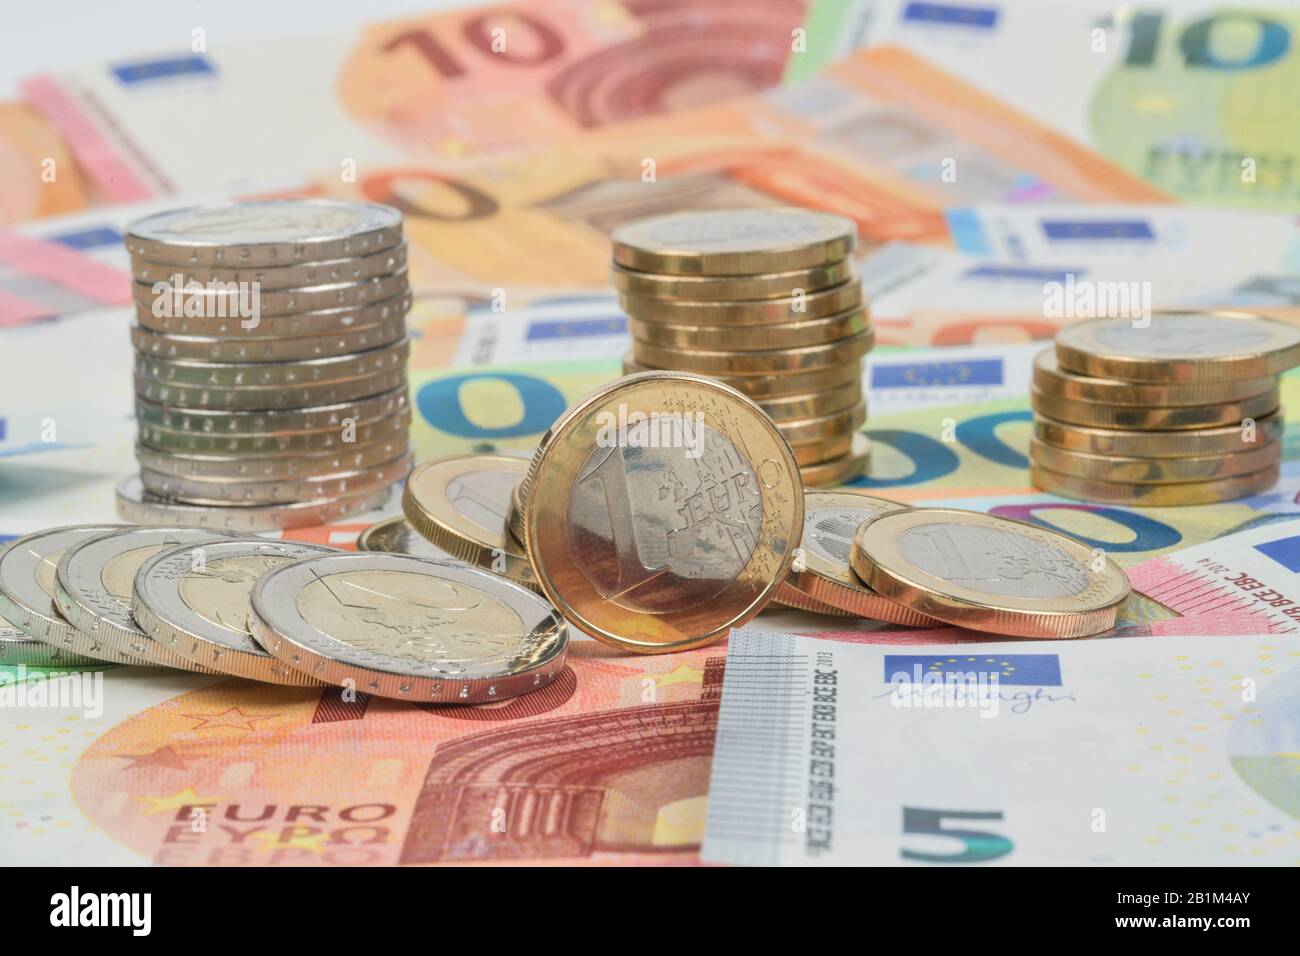 Stapel Centmünzen, Euromünzen, Euro-Geldscheine, Studioaufnahme Stock Photo